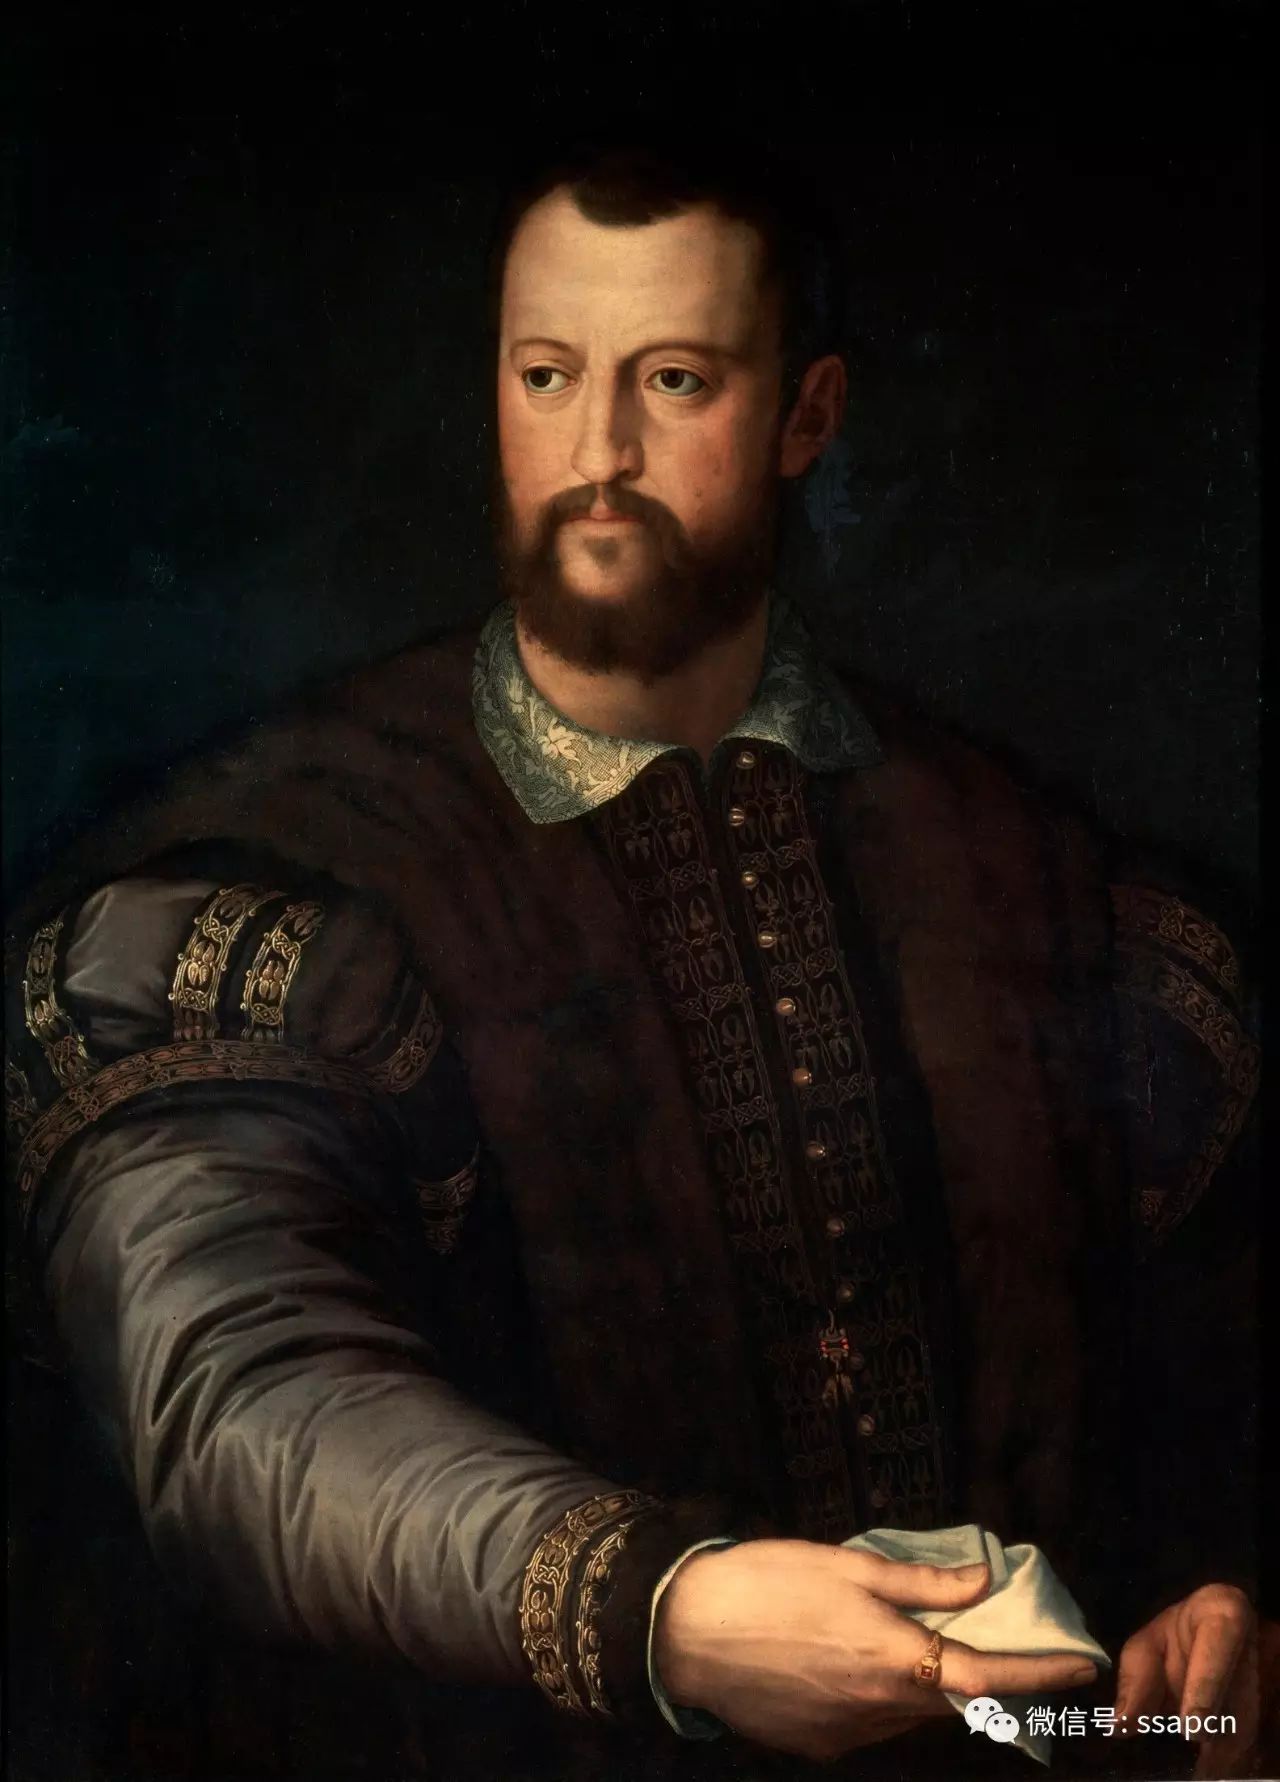 上图:科西莫迪乔瓦尼德美第奇 (1389年–1464年),第一个佛罗伦萨僭主